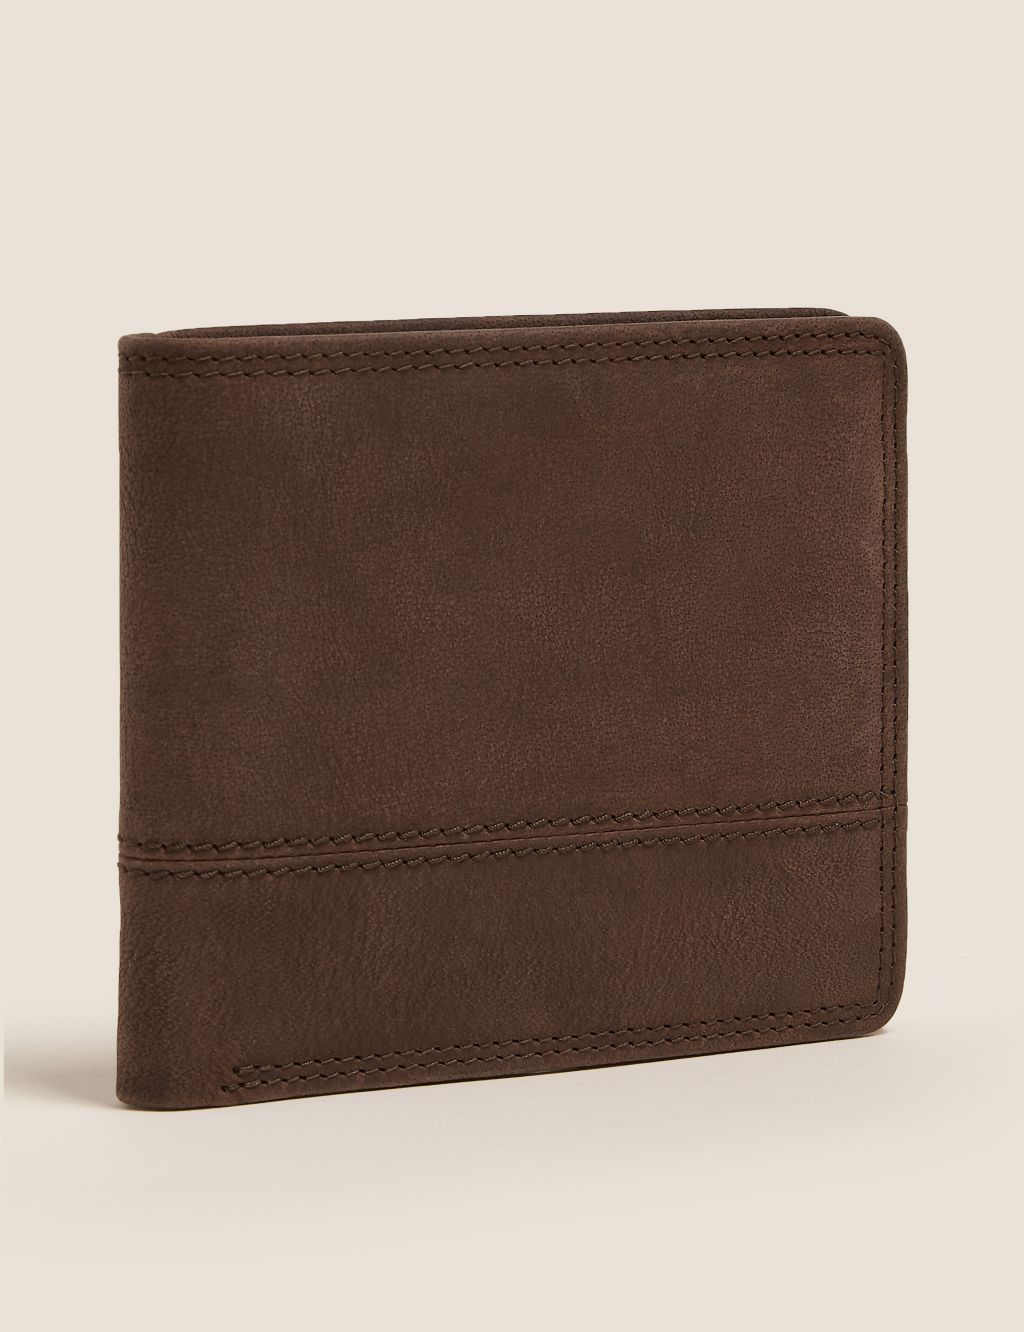 Leather Bi-Fold Cardsafe™ Wallet image 1